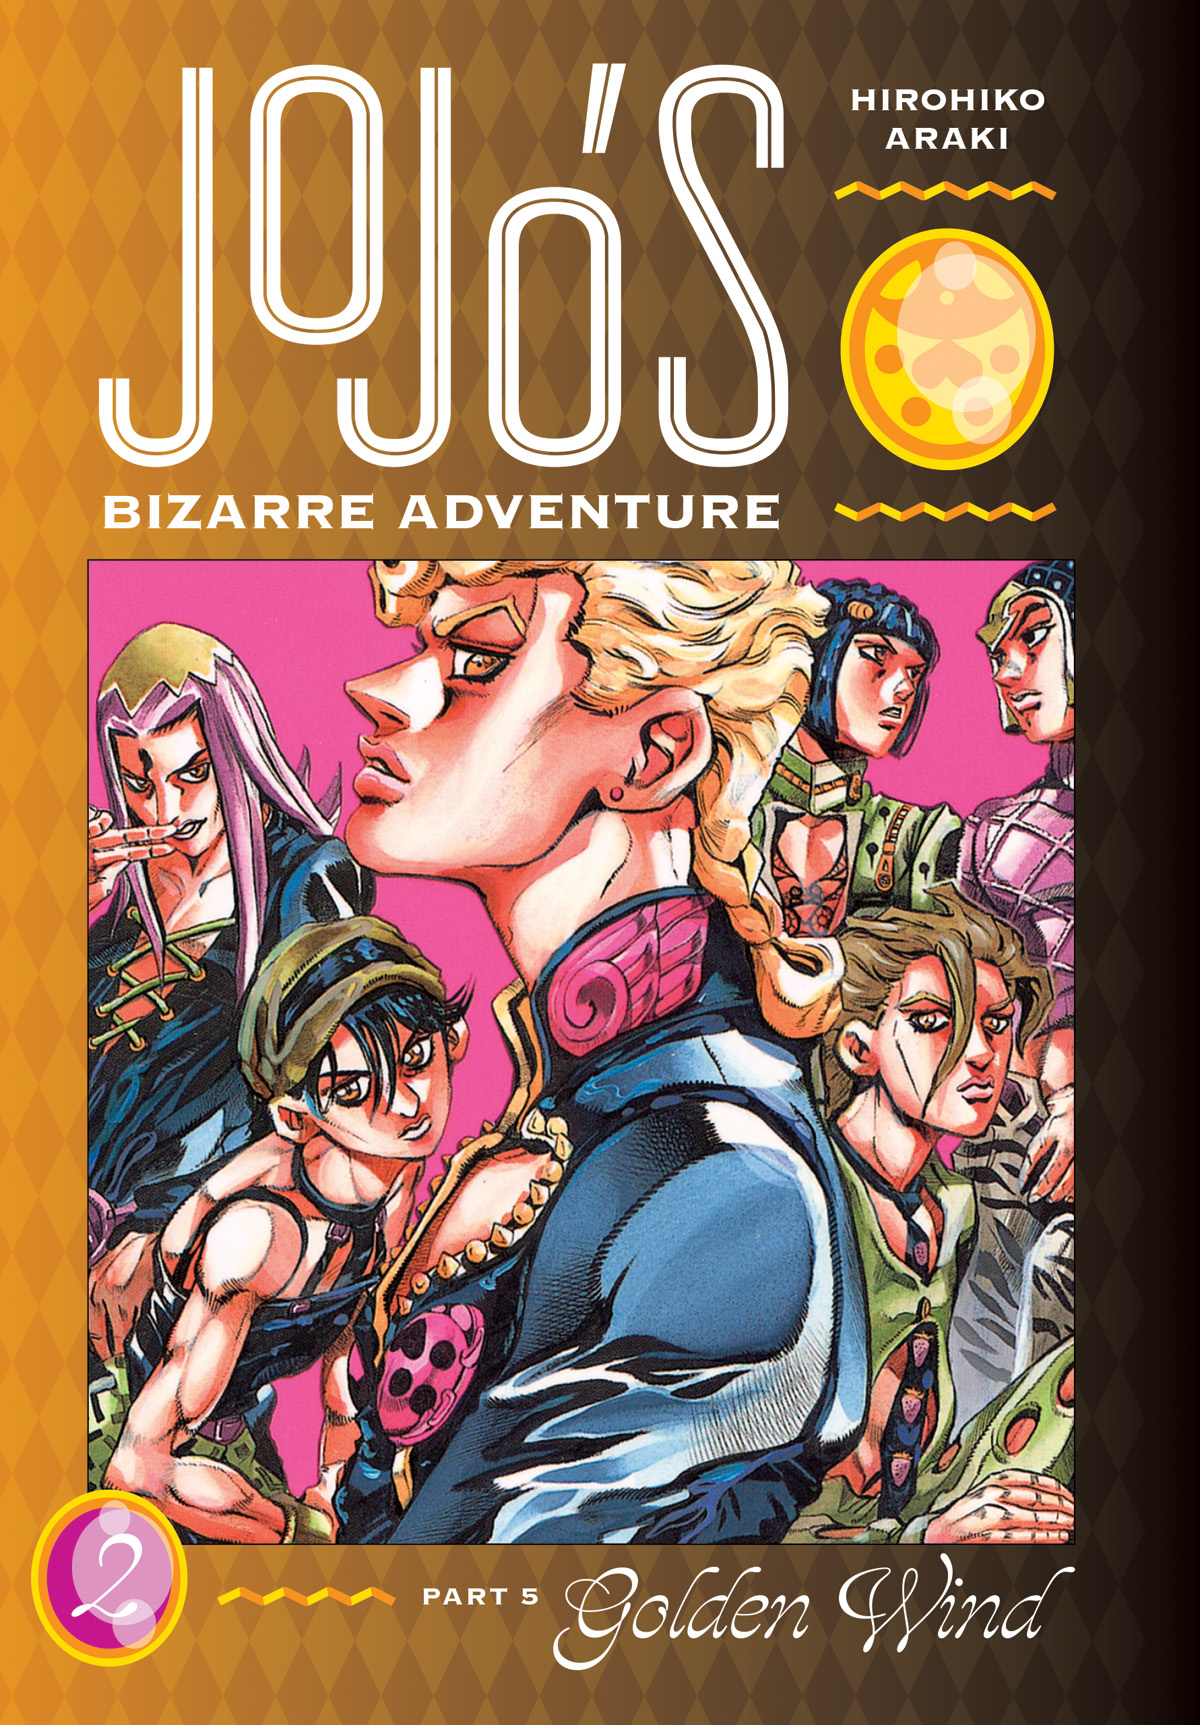 Jojos Bizarre Adventure Part 5 Golden Wind Hardcover Volume 2